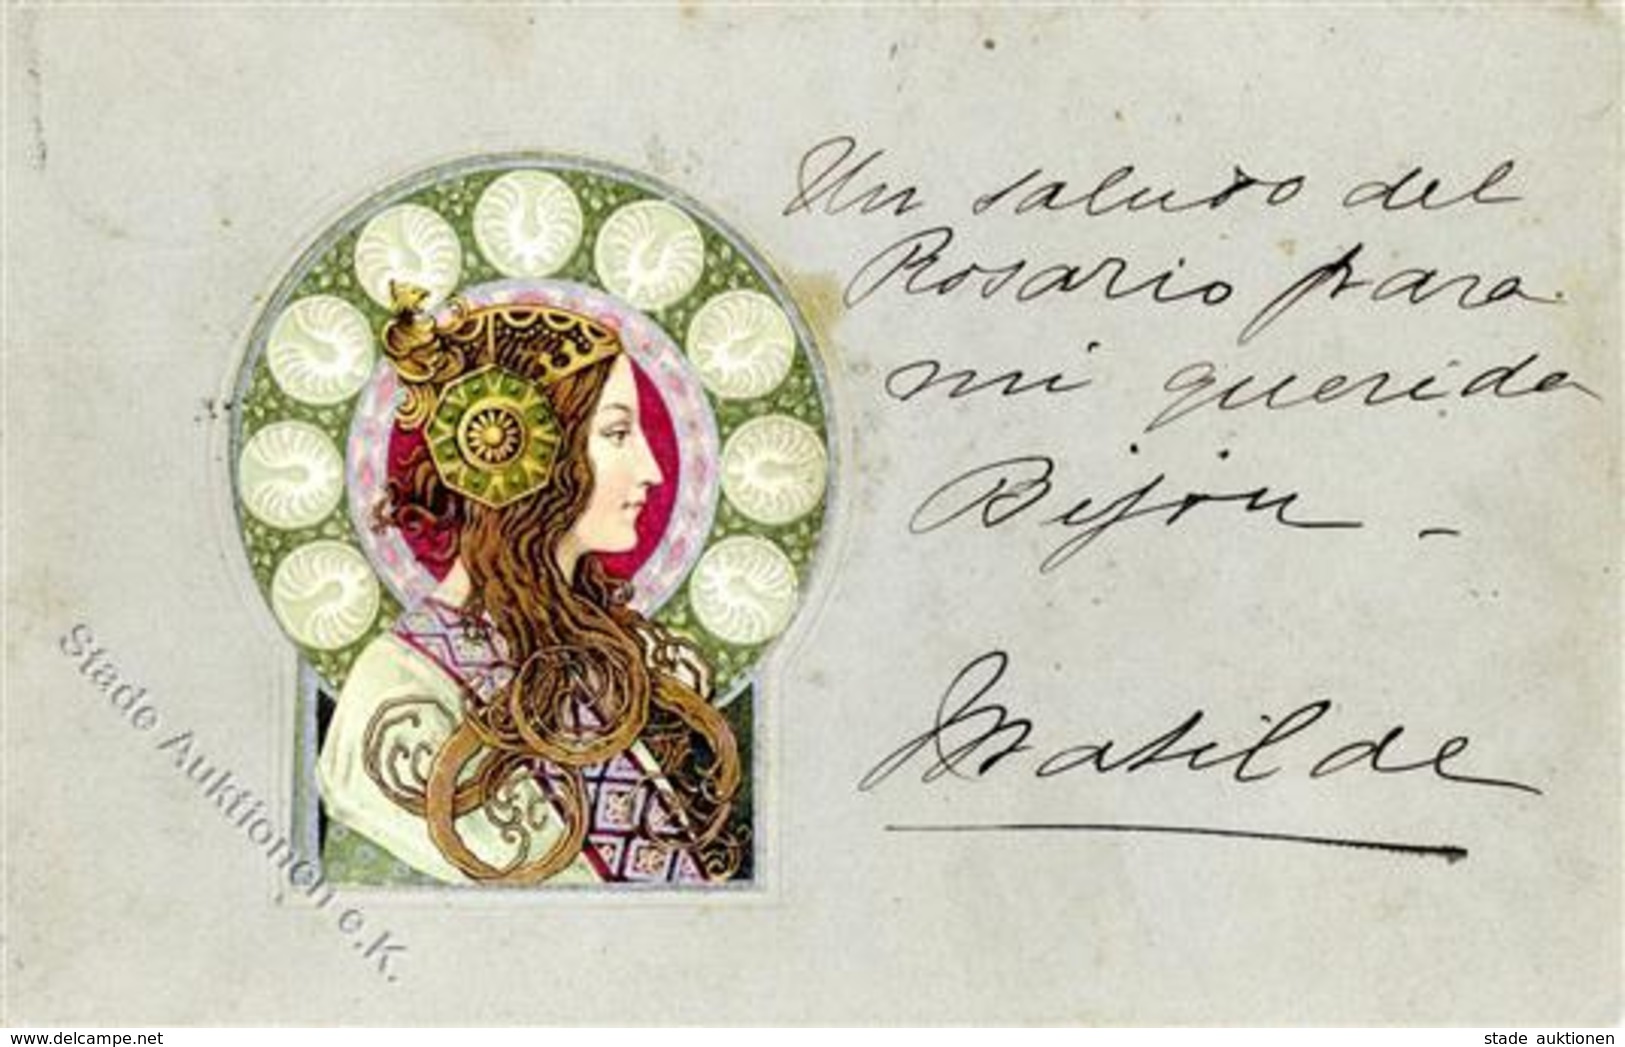 Jugendstil Frau Präge-Karte I-II (fleckig) Art Nouveau - Unclassified